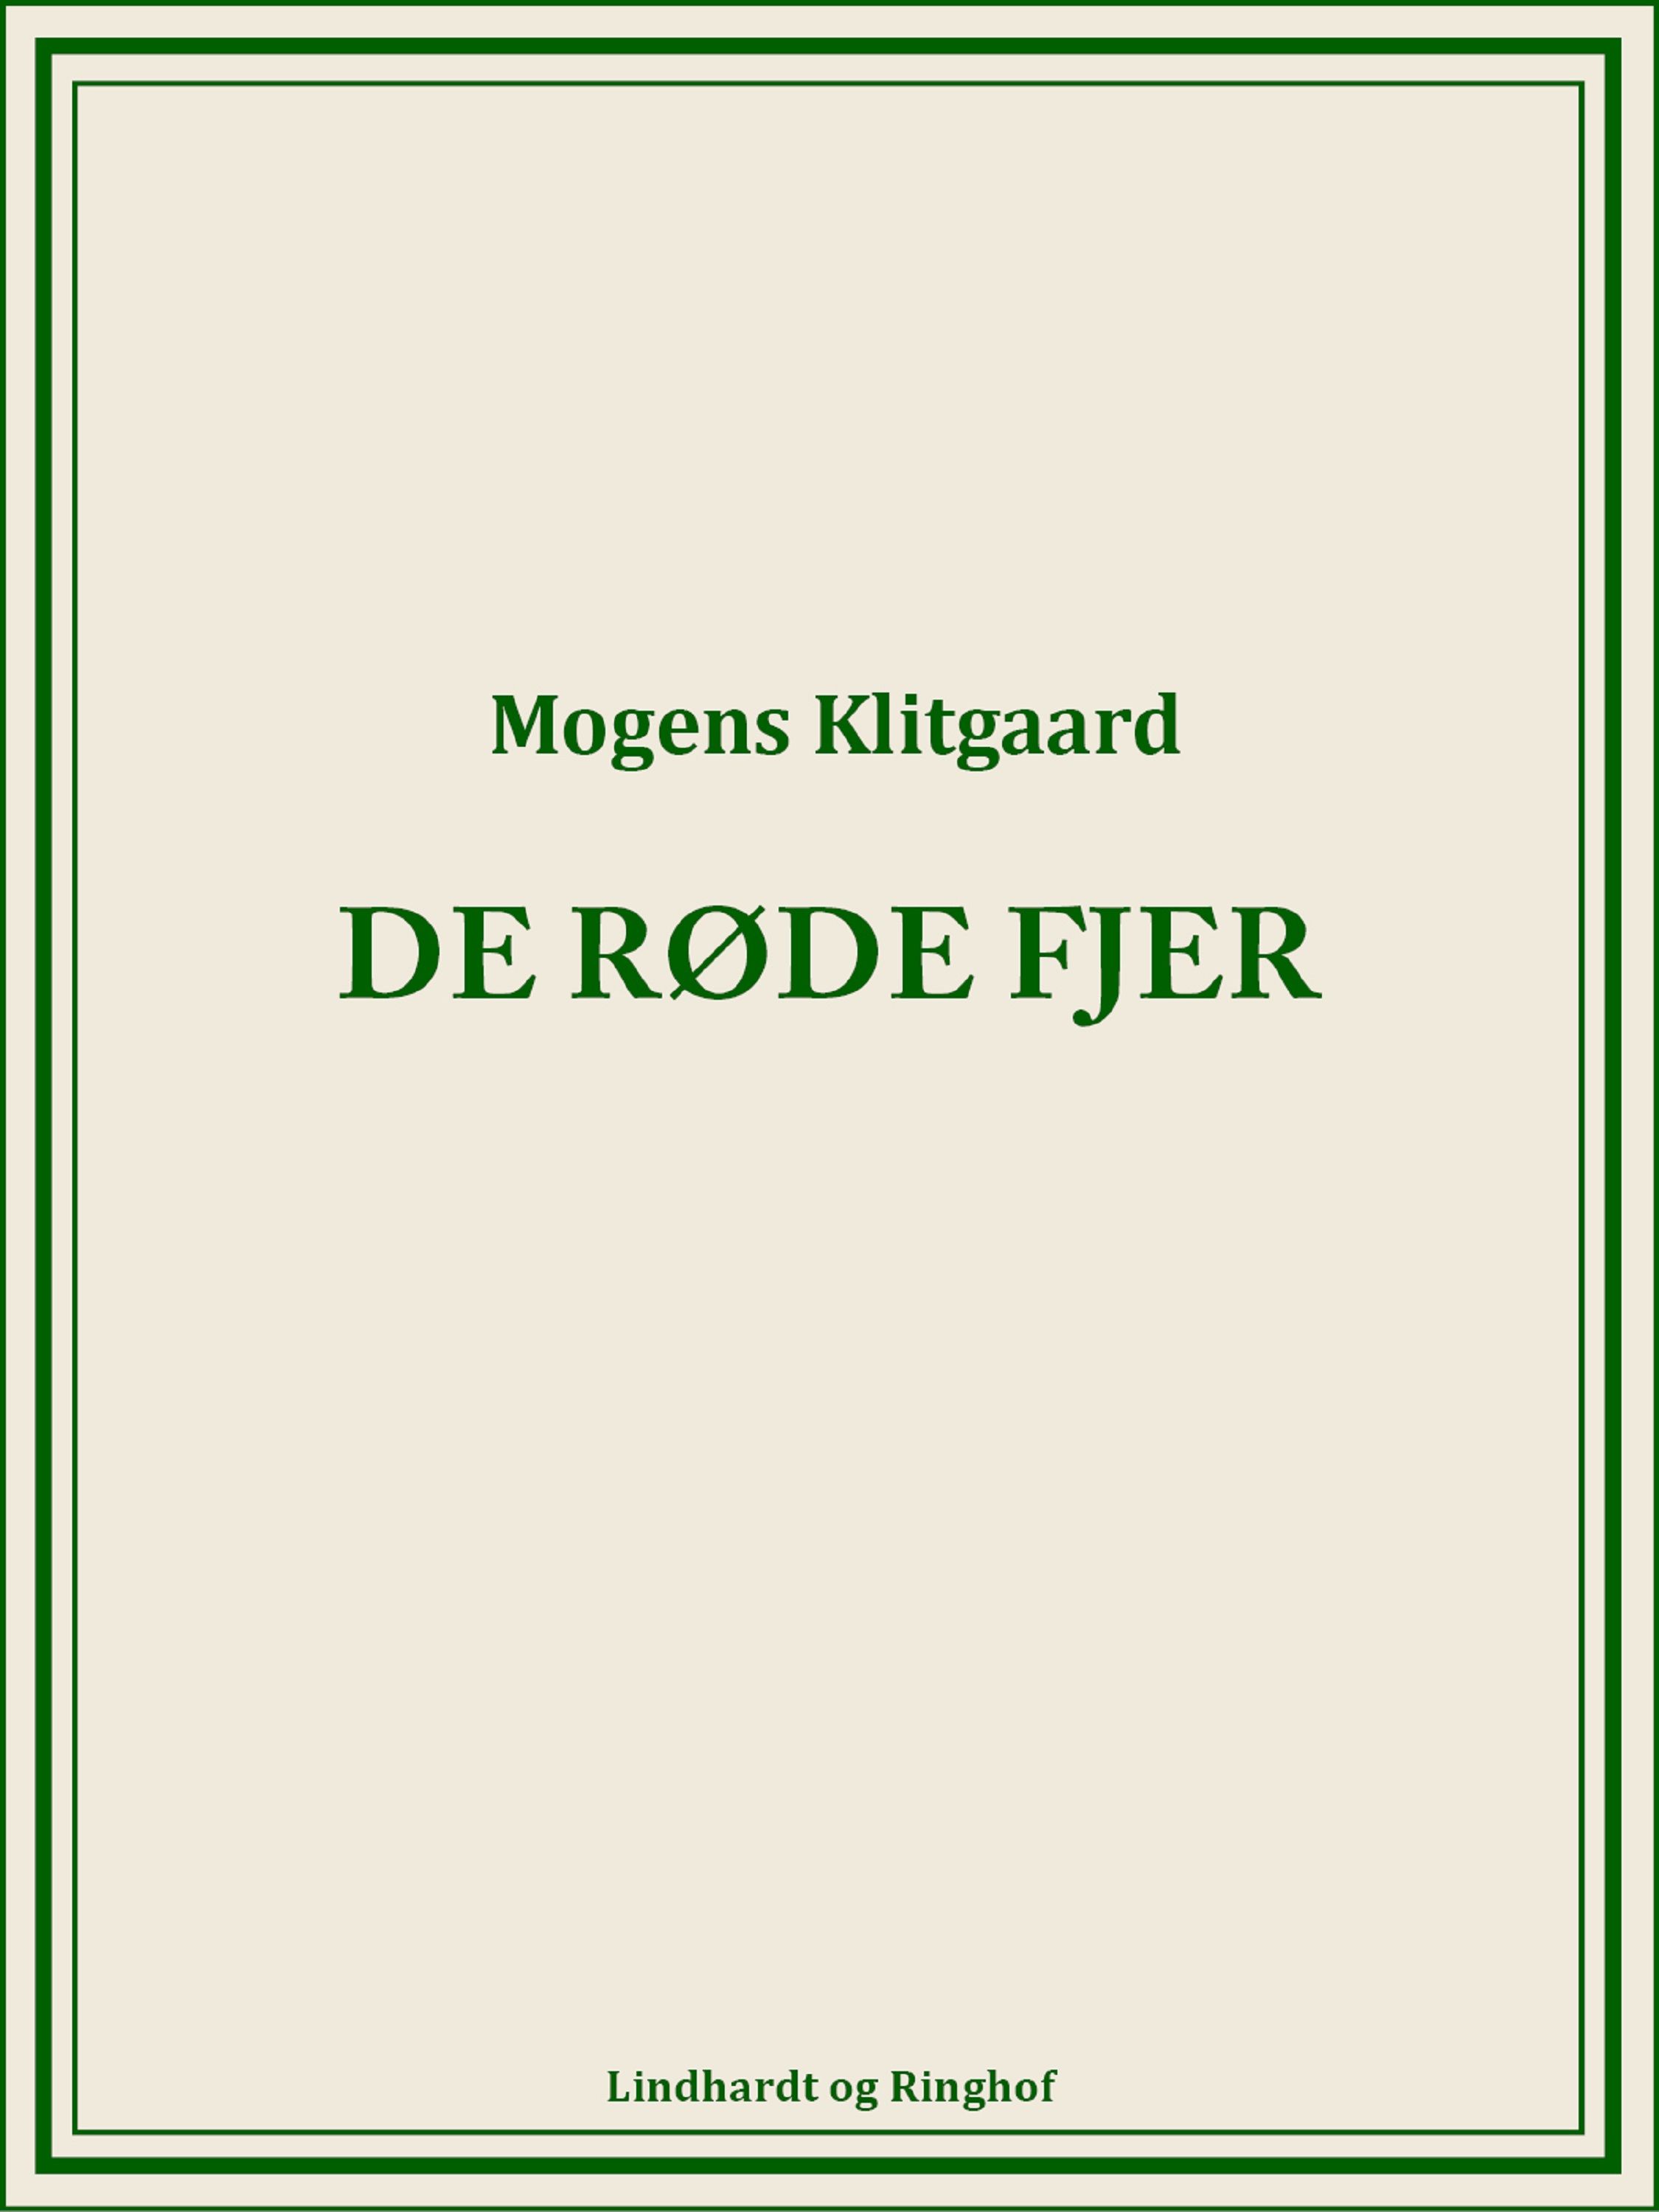 De røde fjer, ljudbok av Mogens Klitgaard